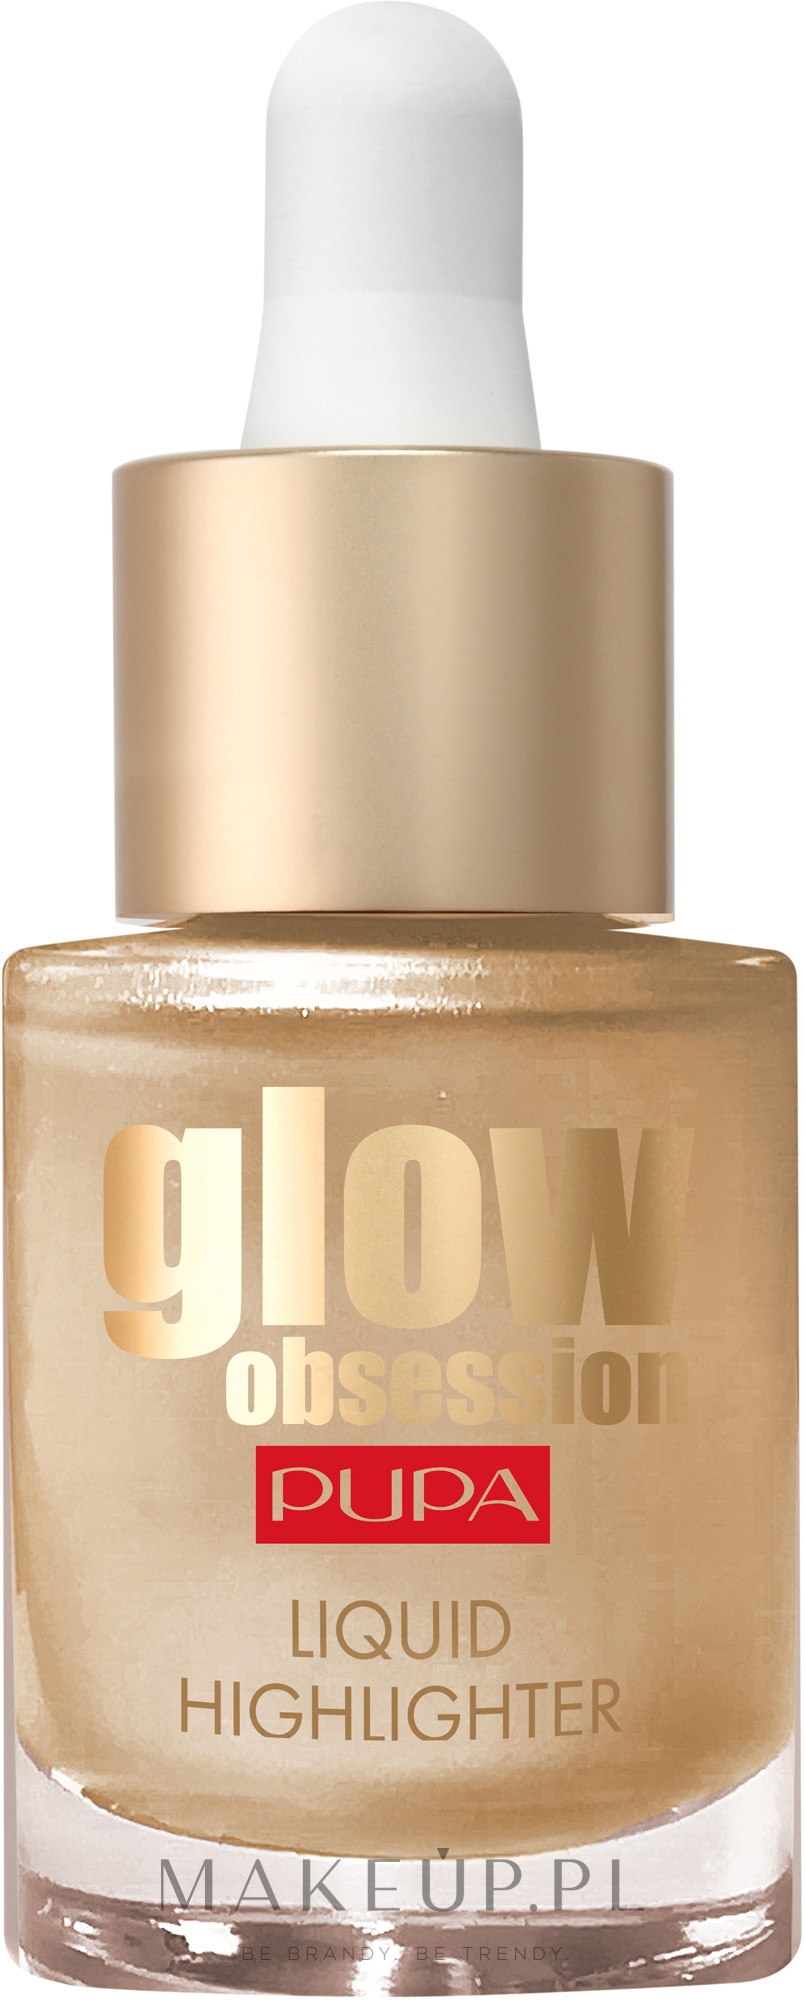 Płynny rozświetlacz do twarzy - Pupa Glow Obsession Liquid Highlighter  — Zdjęcie 100 - Sunrise